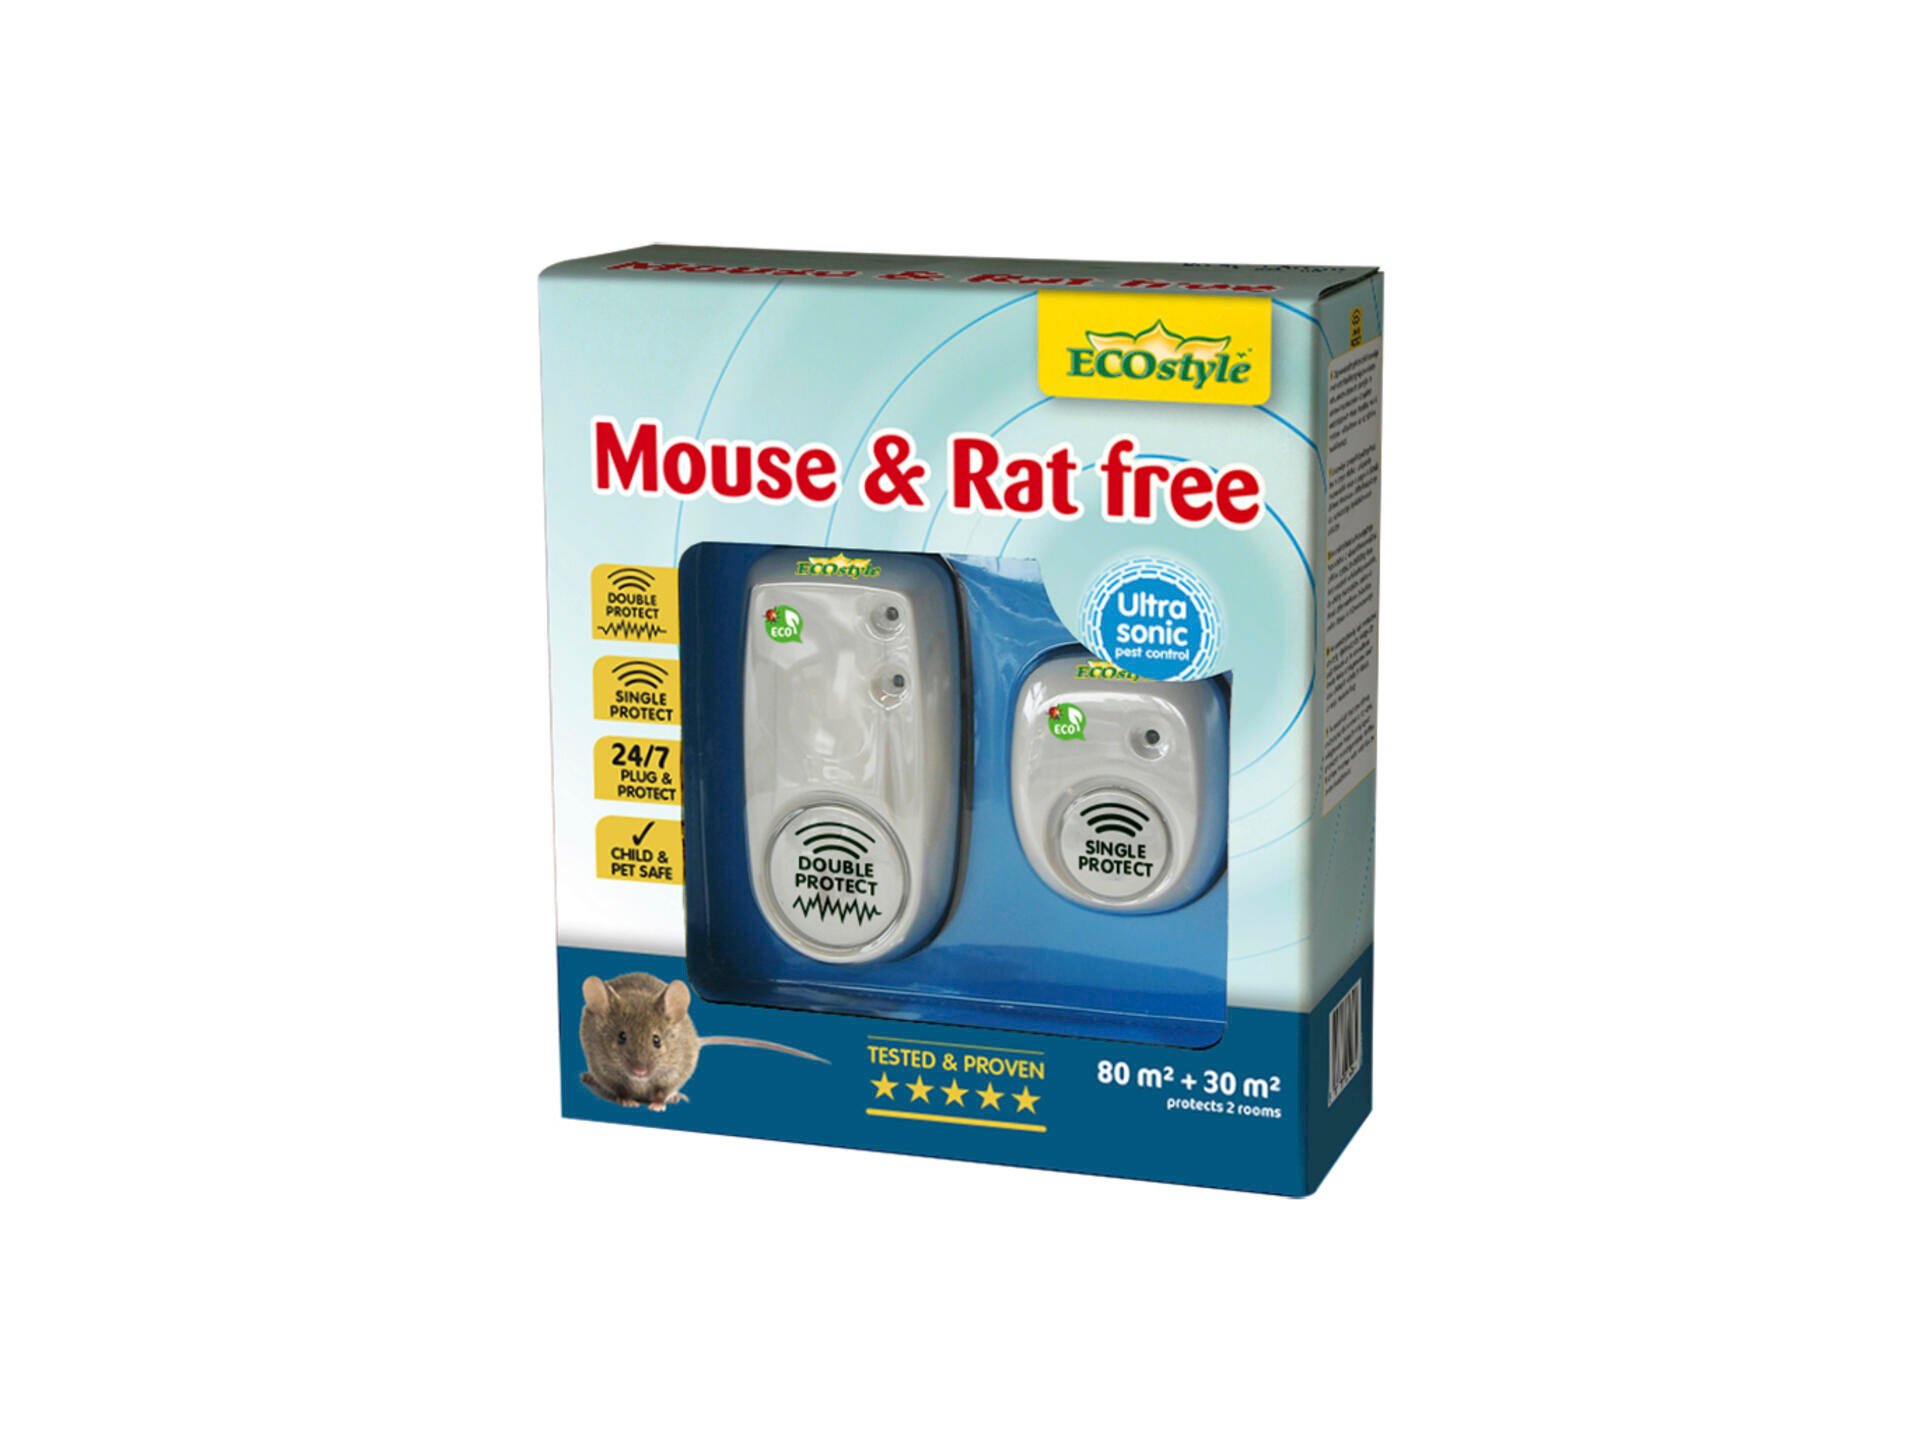 Ecostyle Mouse & Rat Free répulsif rats et souris à ultrasons 80m² + 30m² duopack